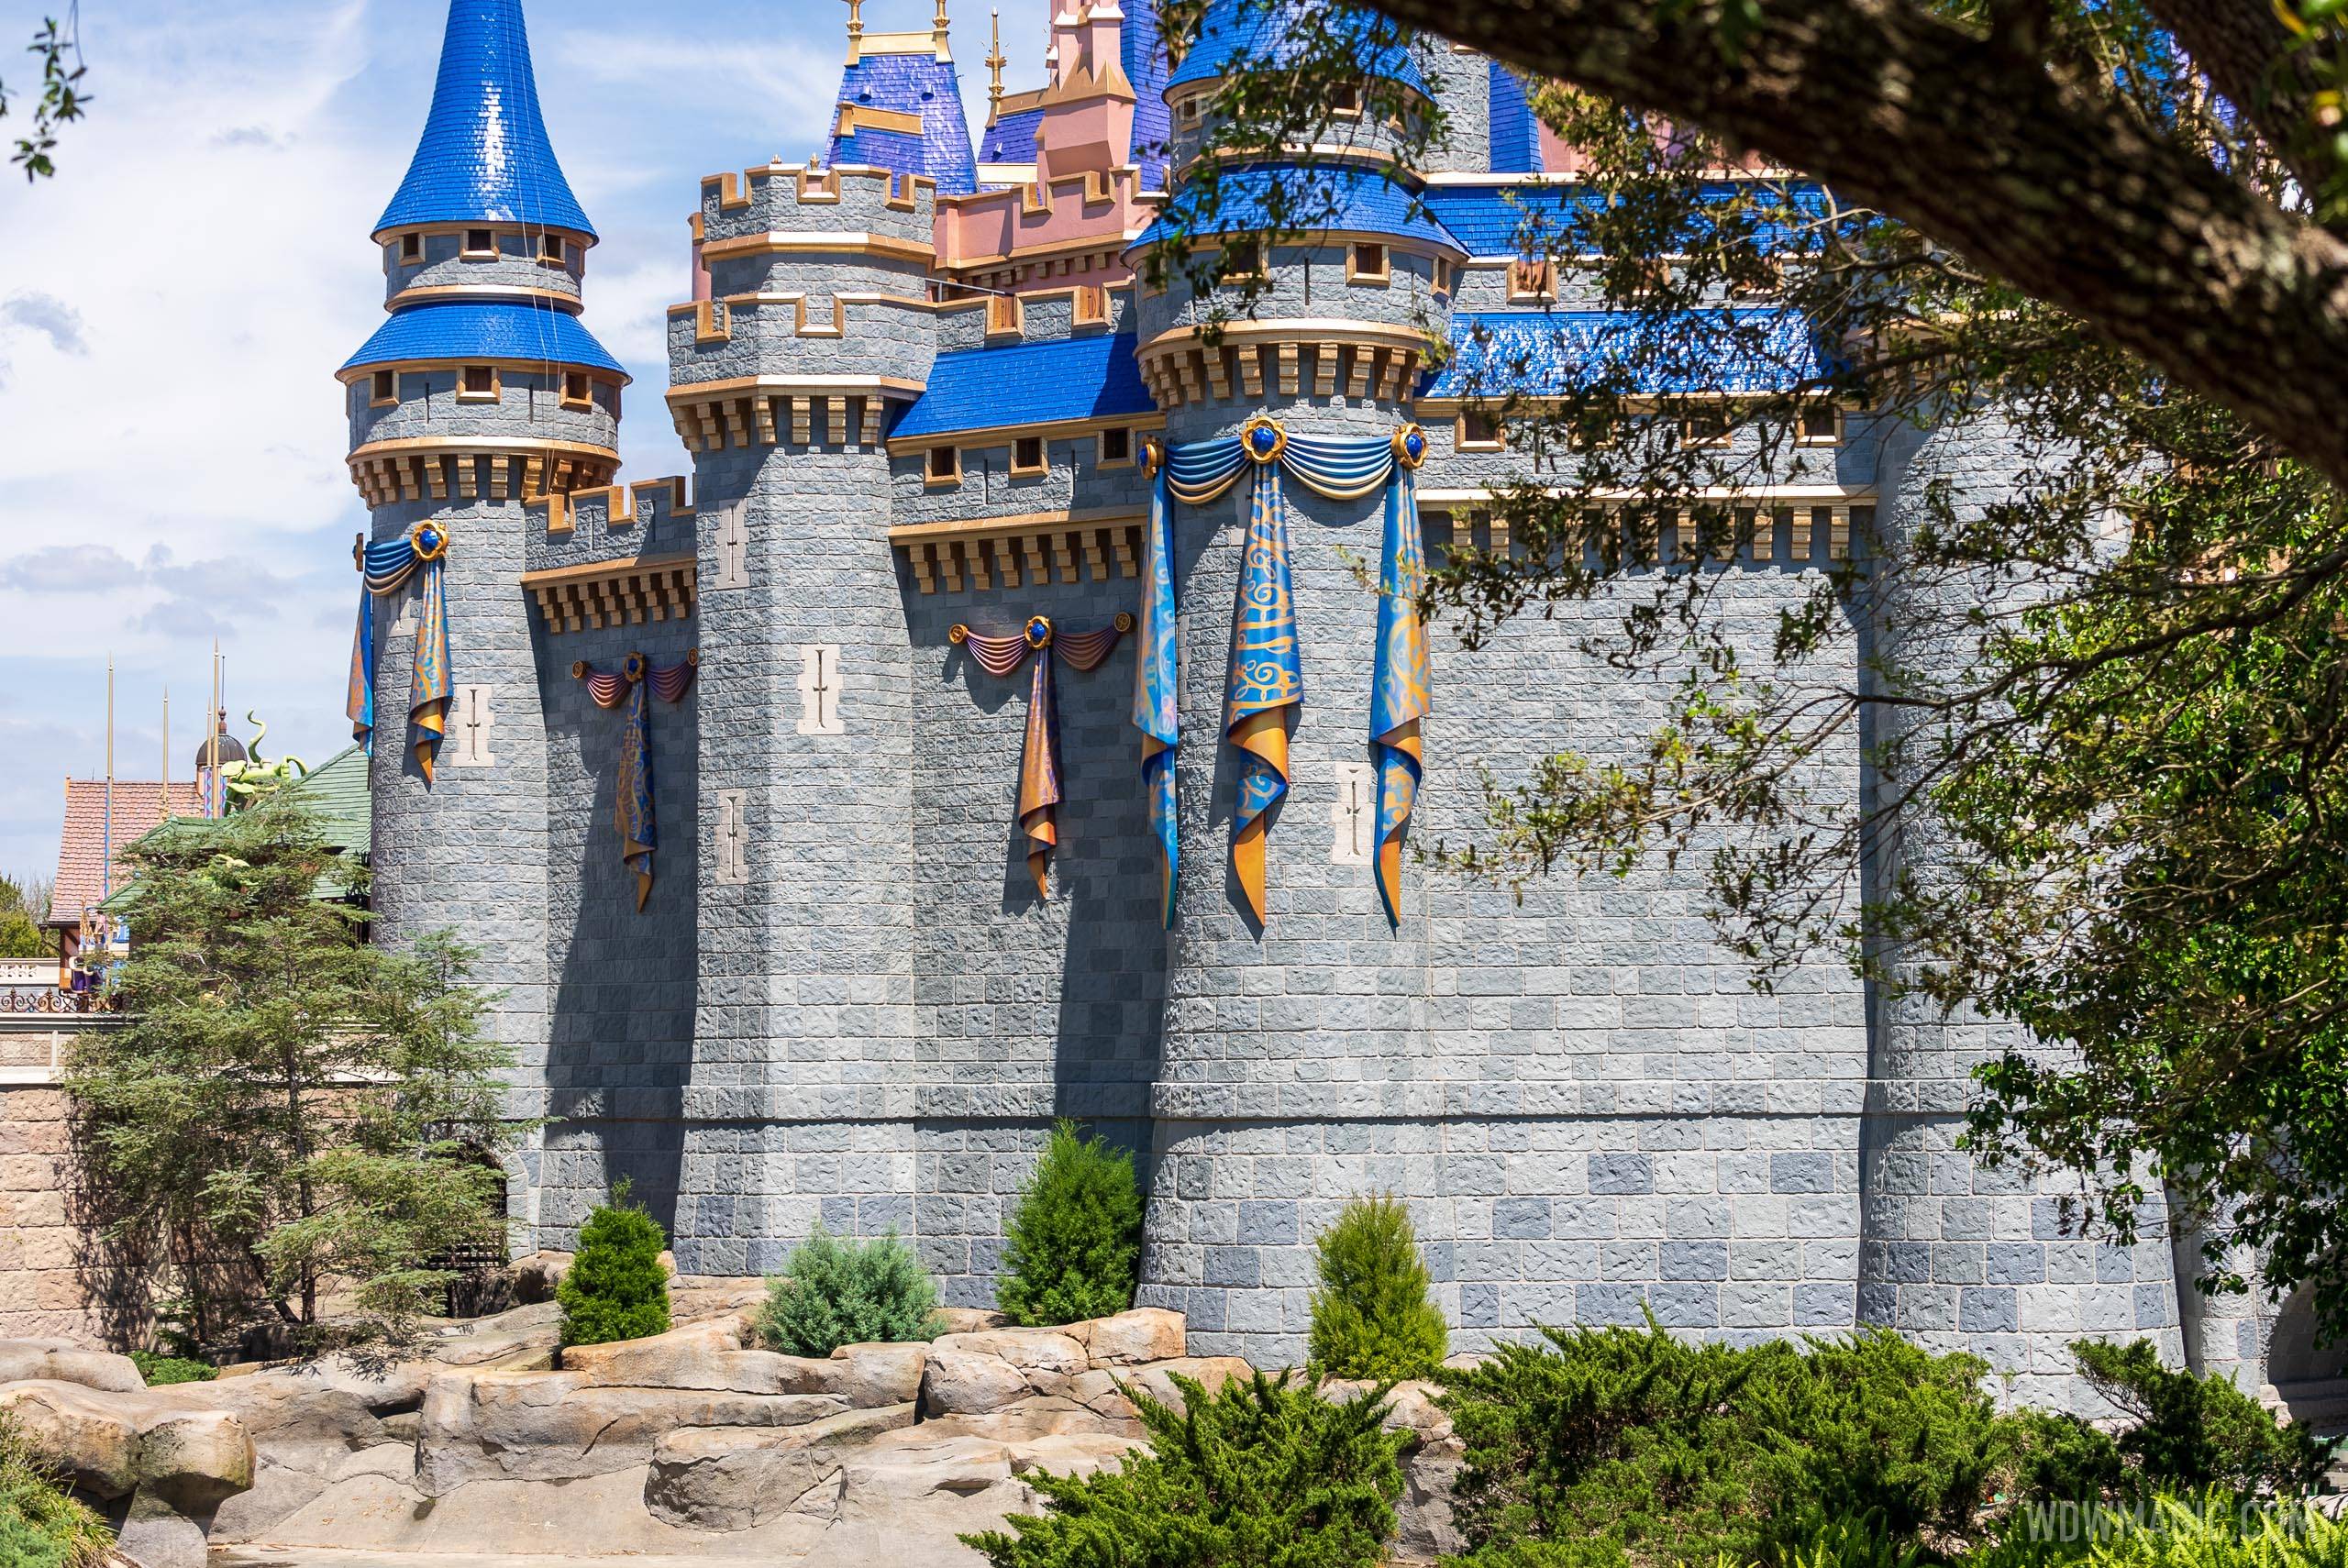 50th anniversary Cinderella Castle additions - March 23 2021